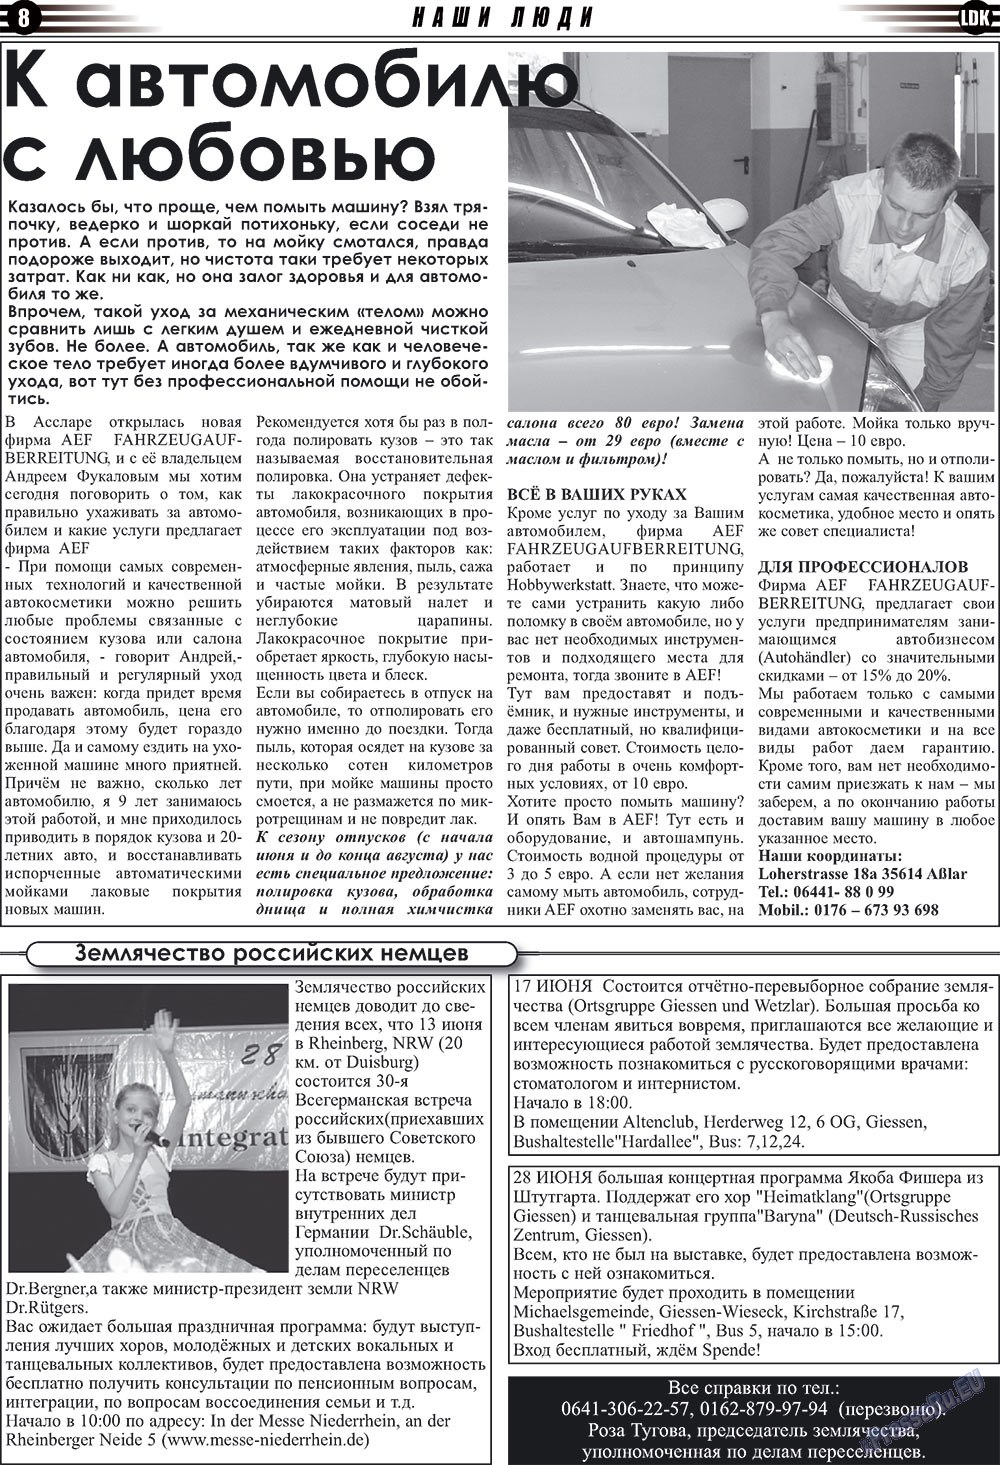 LDK по-русски (газета). 2009 год, номер 6, стр. 8